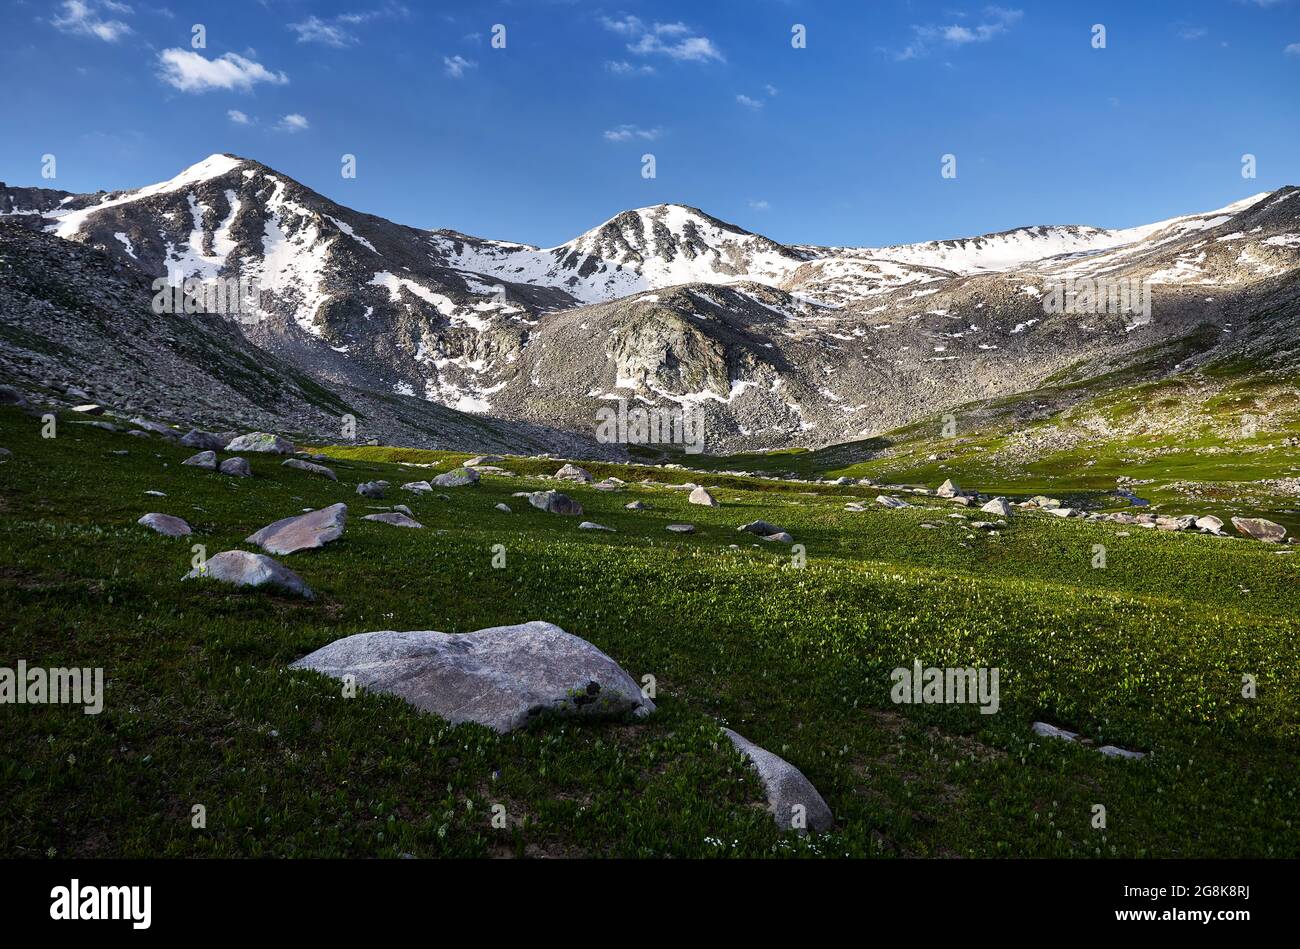 Wunderschöne Landschaft des Bergtals mit Schneedeckengipfel und grüner Graswiese im Vordergrund. Outdoor- und Wanderkonzept Stockfoto